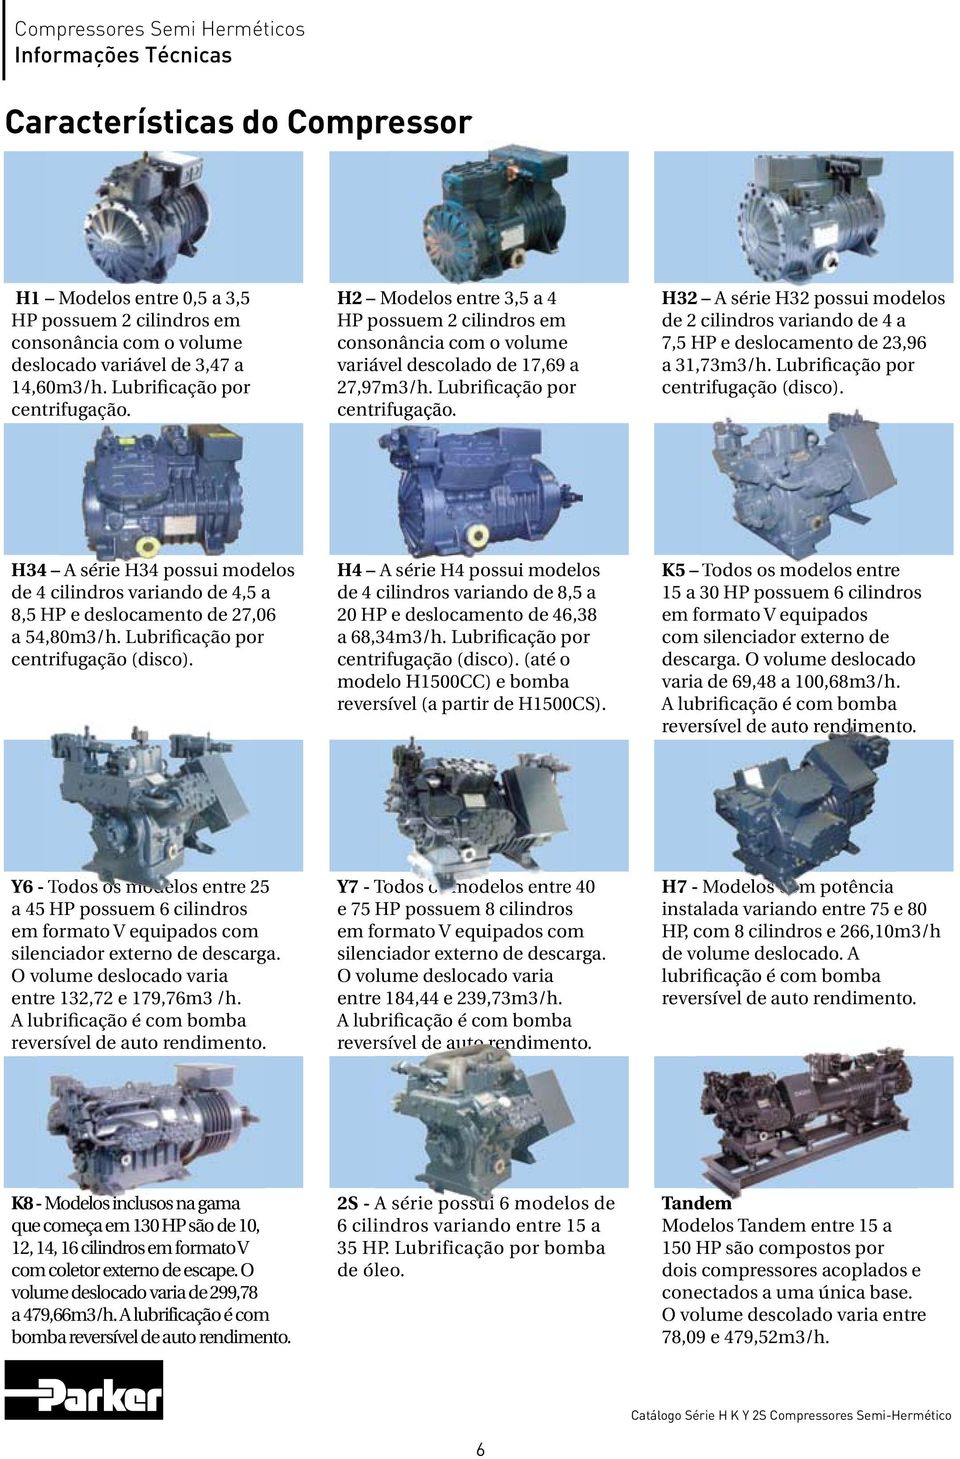 H32 A série H32 possui modelos de 2 cilindros variando de 4 a 7,5 HP e deslocamento de 23,96 a 31,73m3/h. Lubrificação por centrifugação (disco).